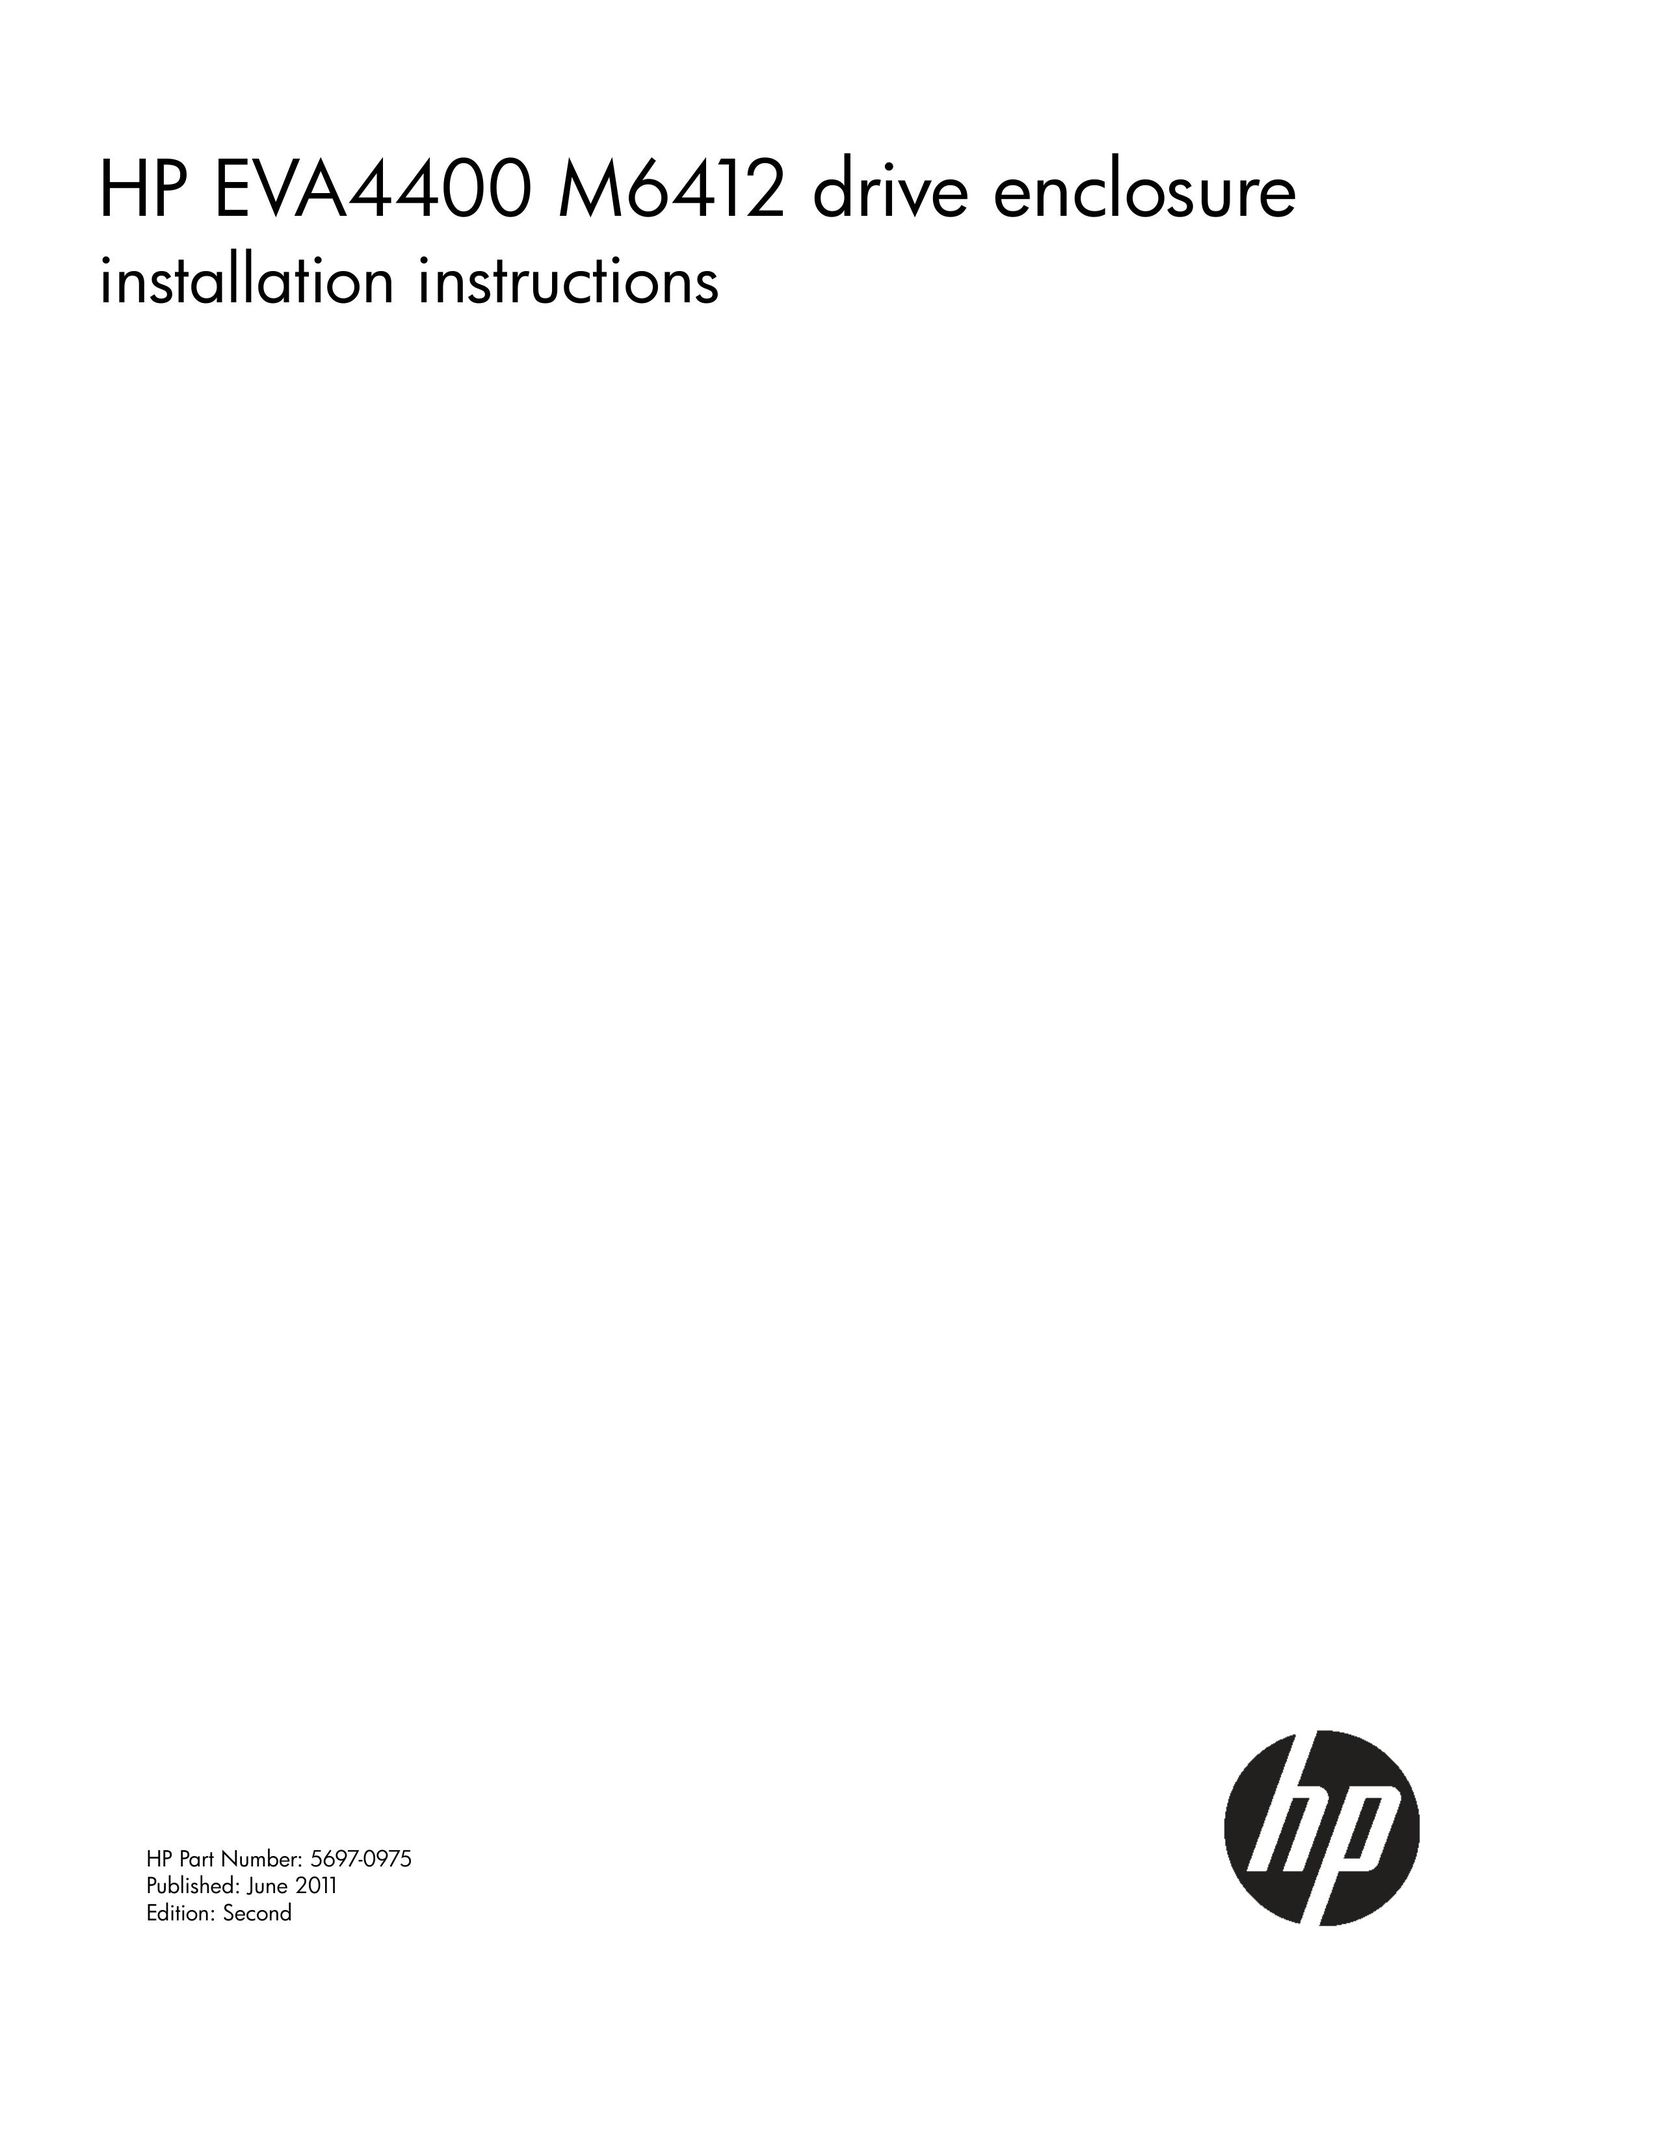 HP (Hewlett-Packard) 4400 Computer Drive User Manual